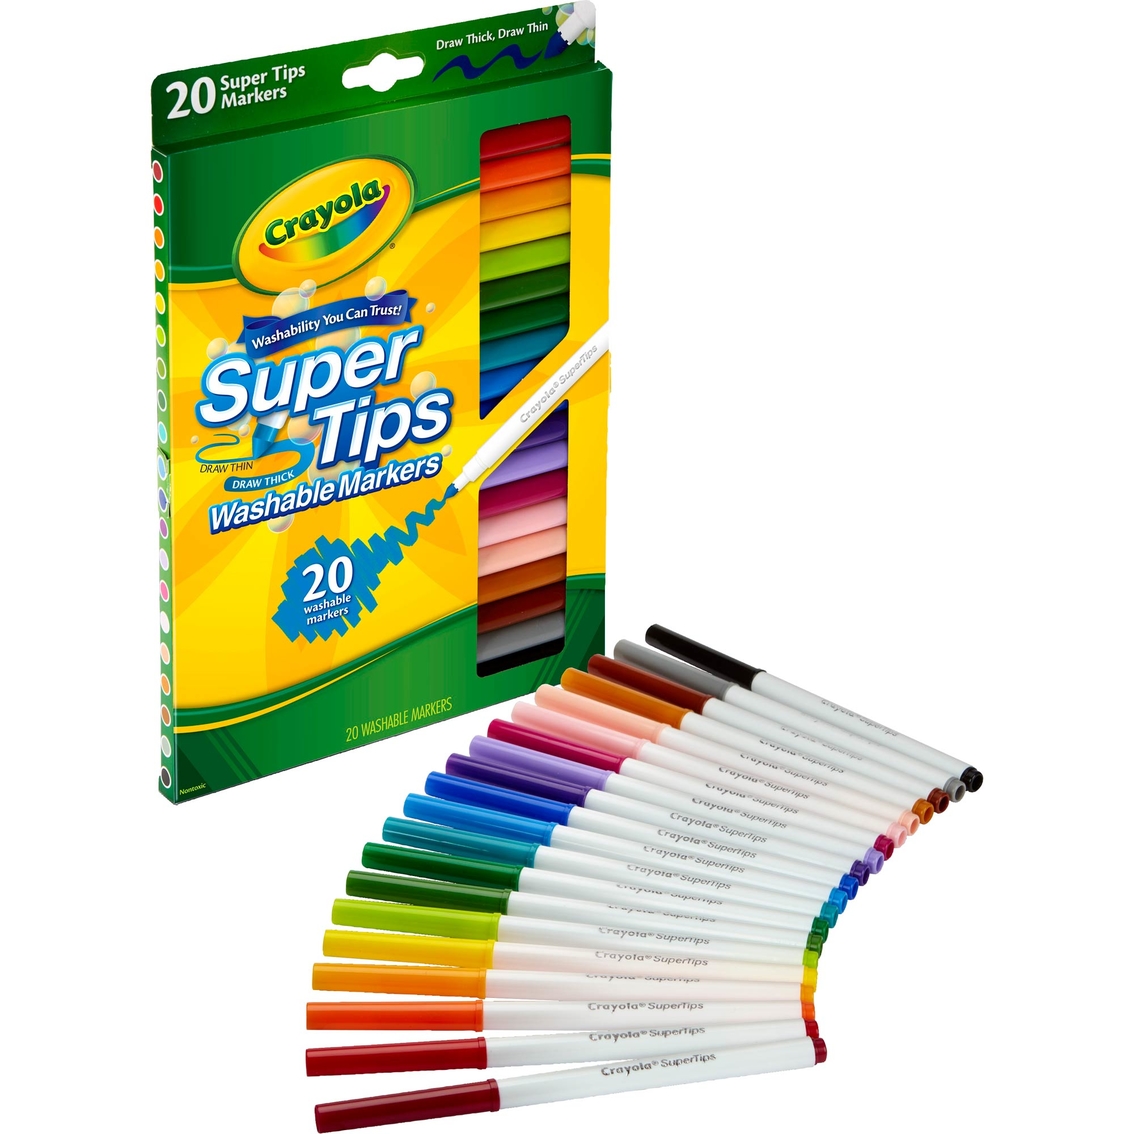 Crayola Washable Super Tips Markers 20 pc. Set - Image 2 of 2